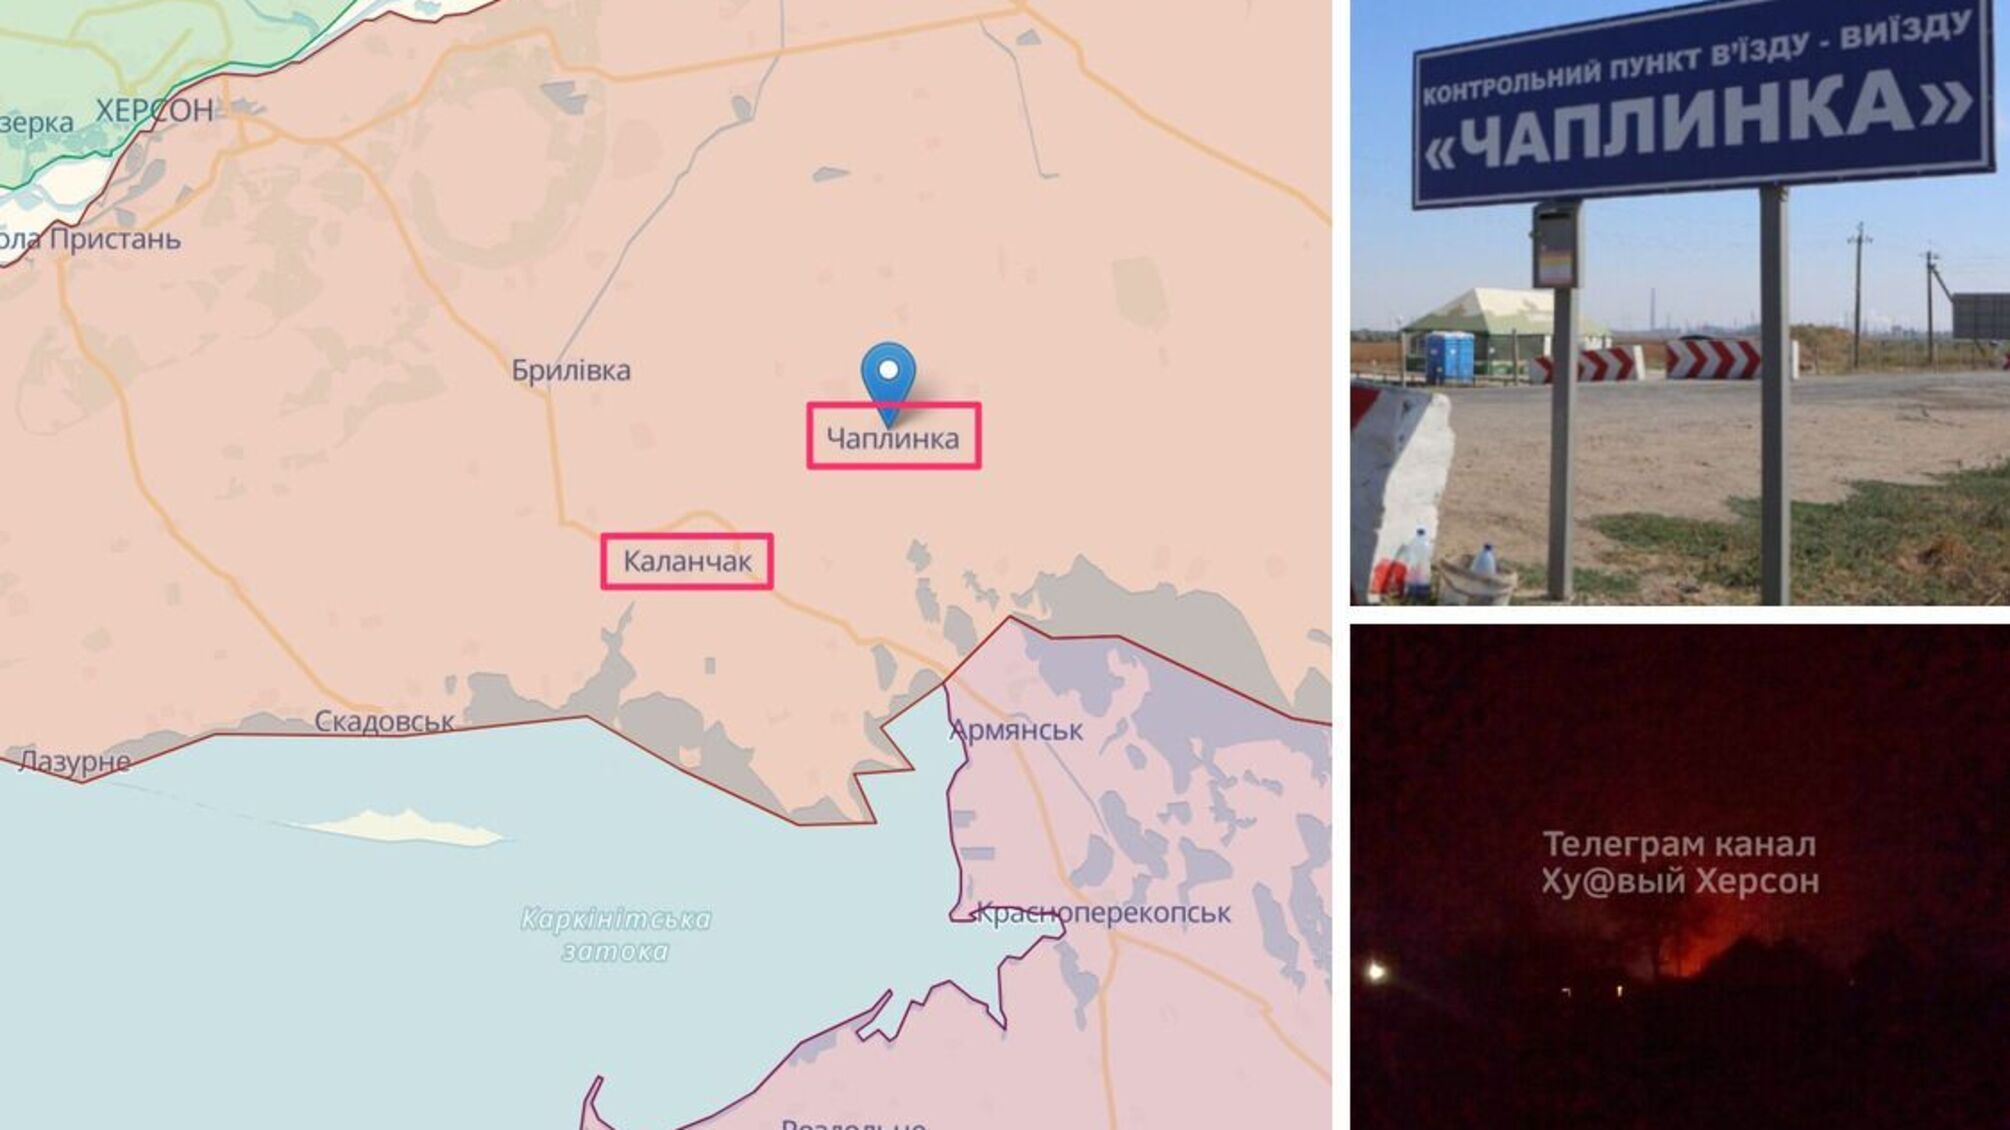 ВСУ подтвердили уничтожение базы оккупантов под Чаплинкой Херсонской области, - Генштаб